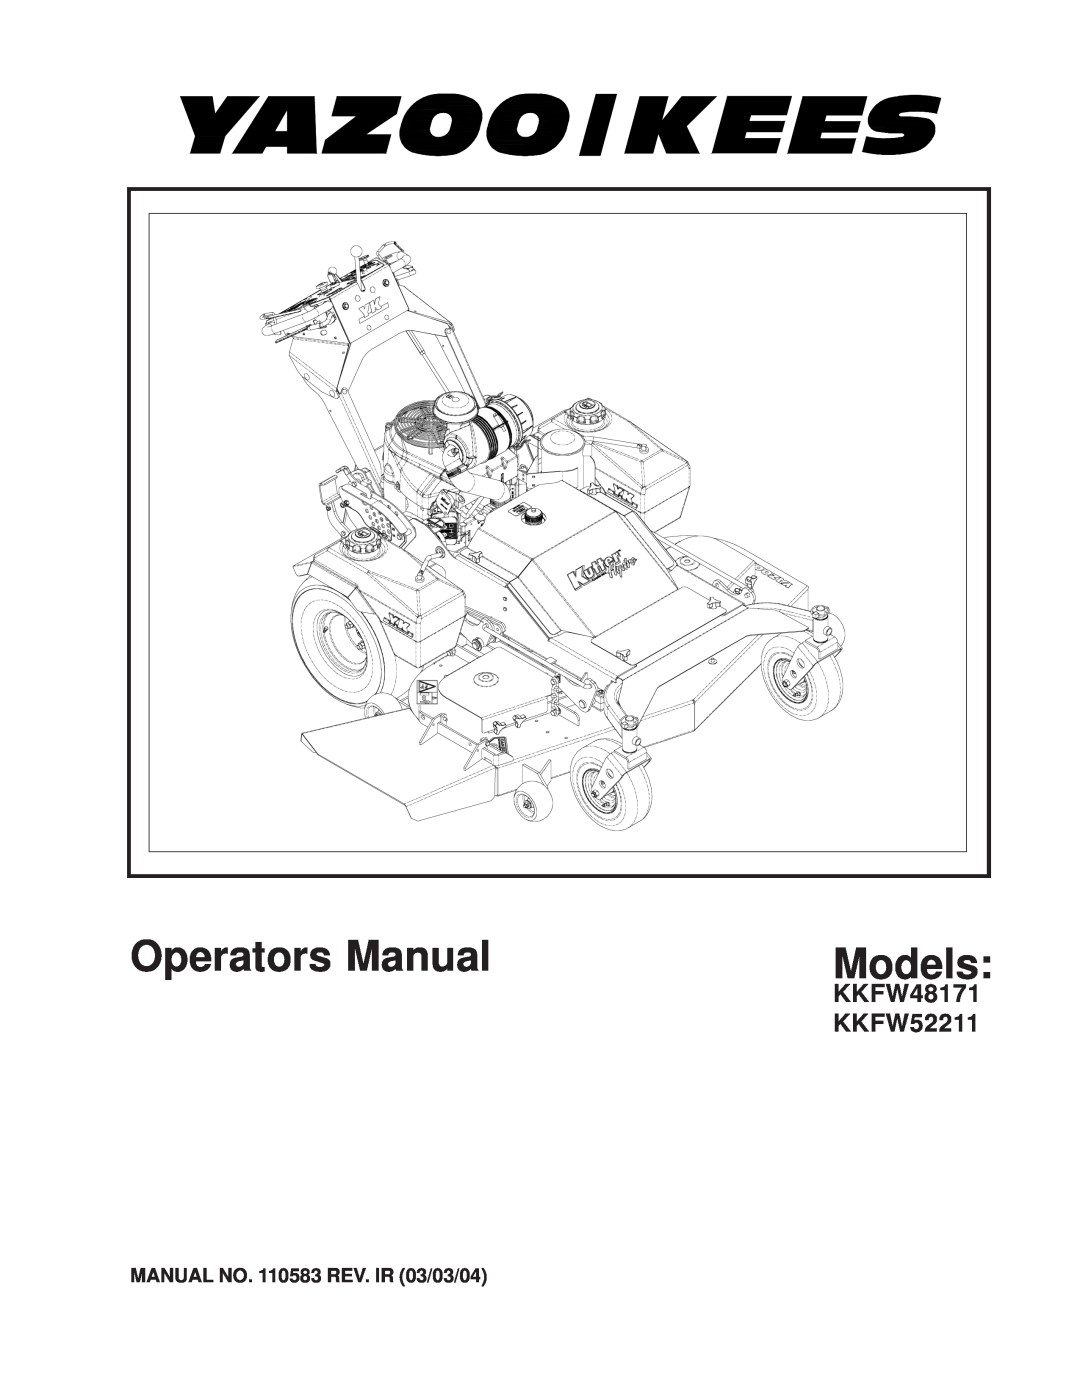 Yazoo/Kees KKFW48171, KKFW52211 manual Operators Manual, Models 